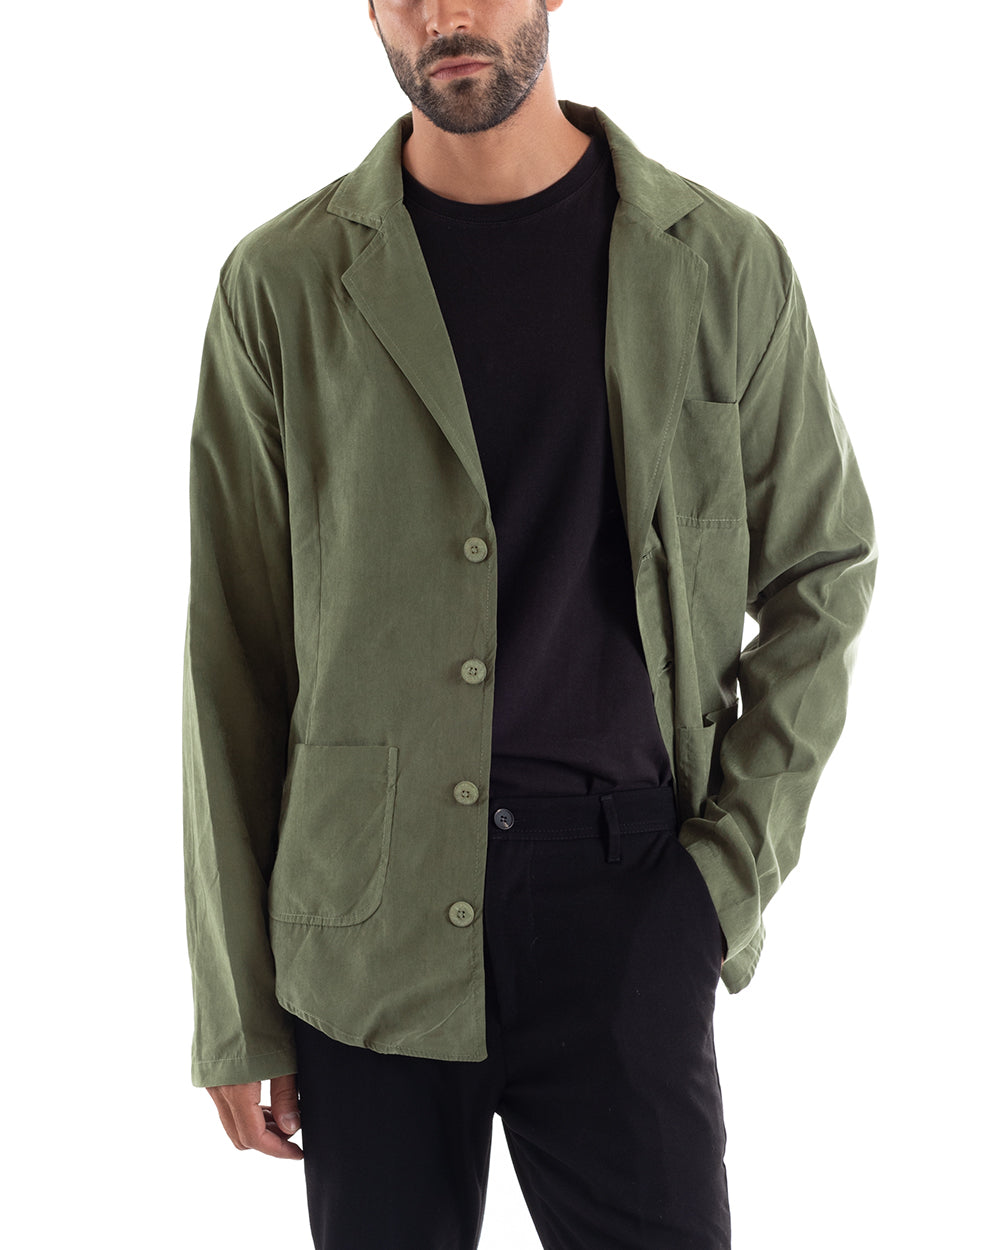 Men's Shirt With Collar Saharan Jacket Long Sleeve Green Cotton GIOSAL-C2456A